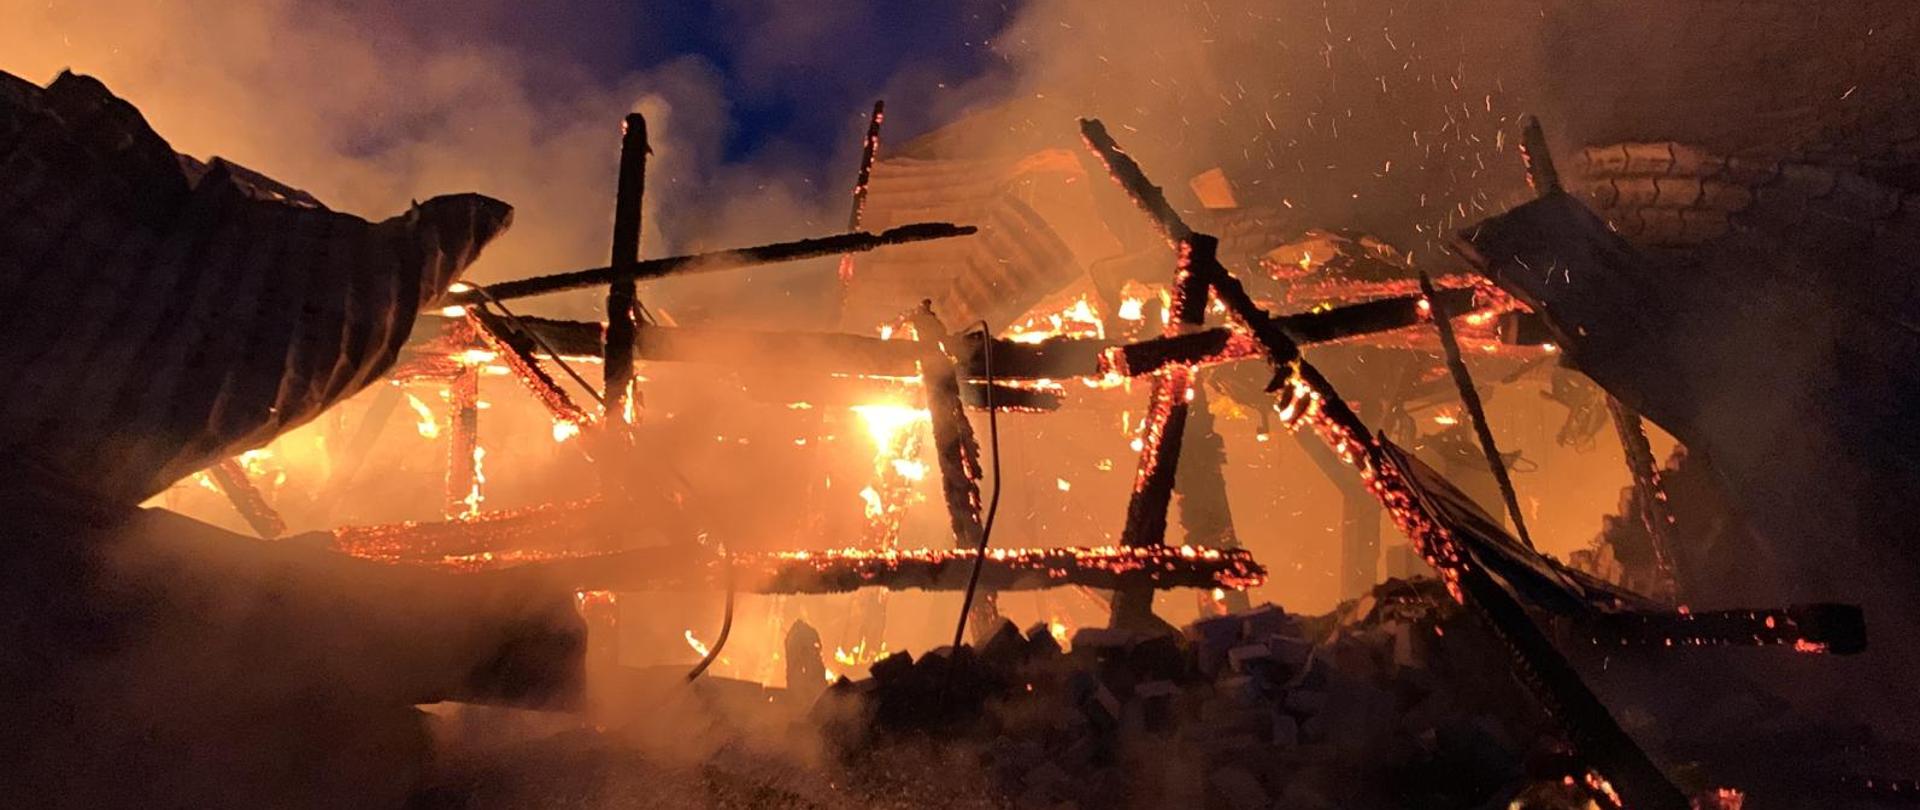 Zdjęcie przedstawia pożar poddasza budynku magazynowego